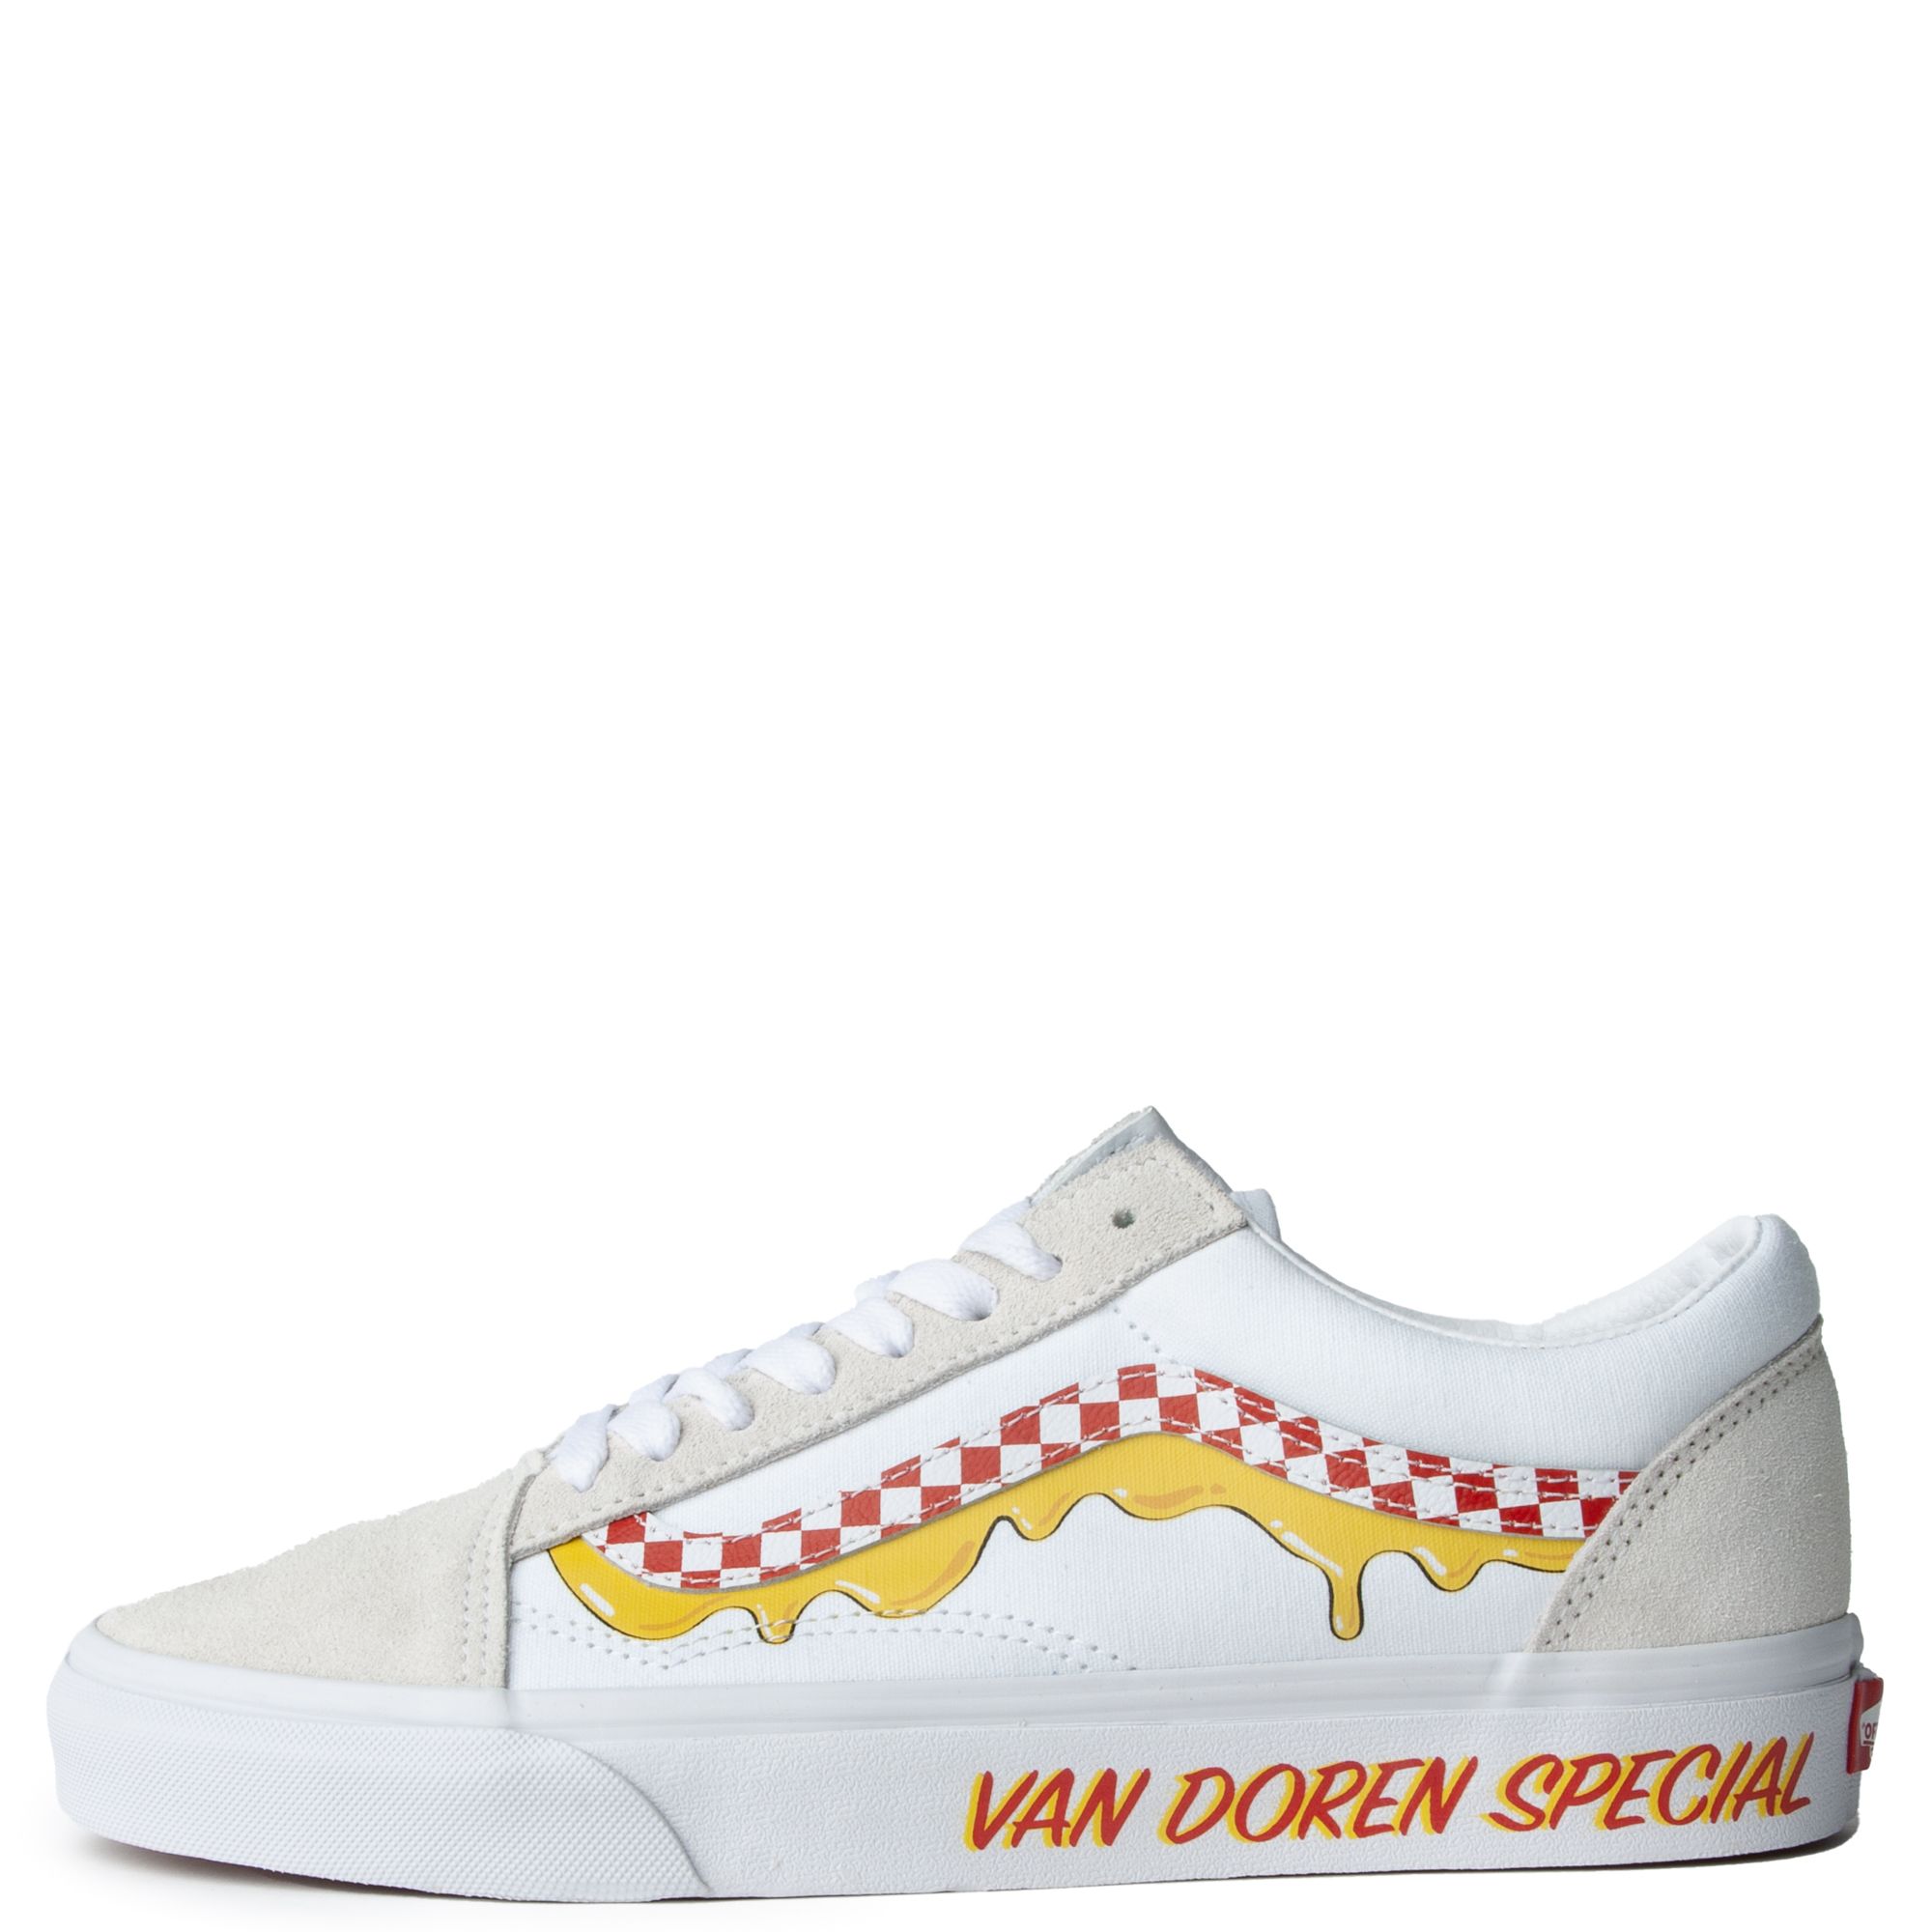 Vans Old Skool Van Doren Special Skate Shoe - True White